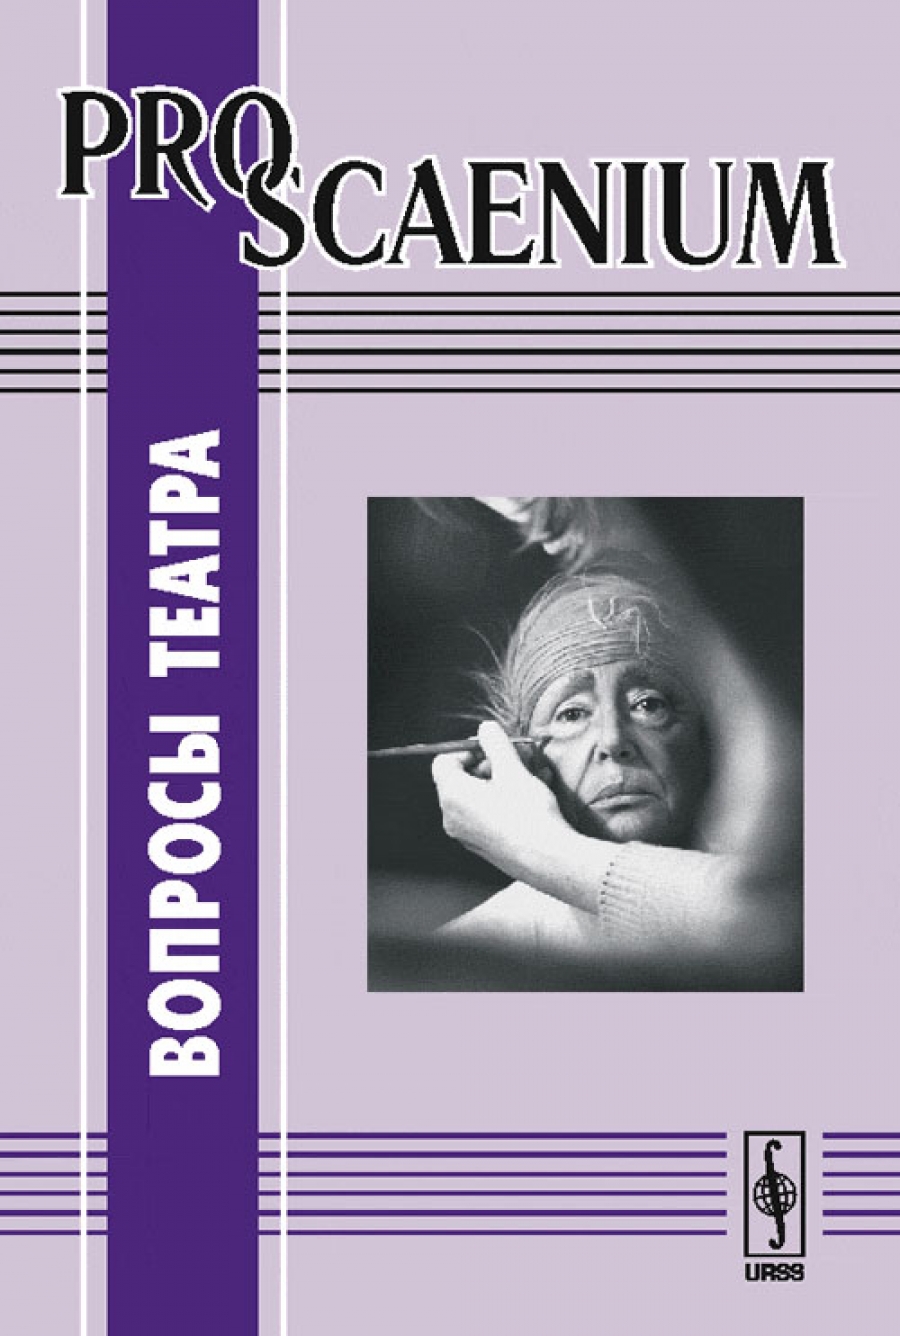  .. PRO Scaenium:   